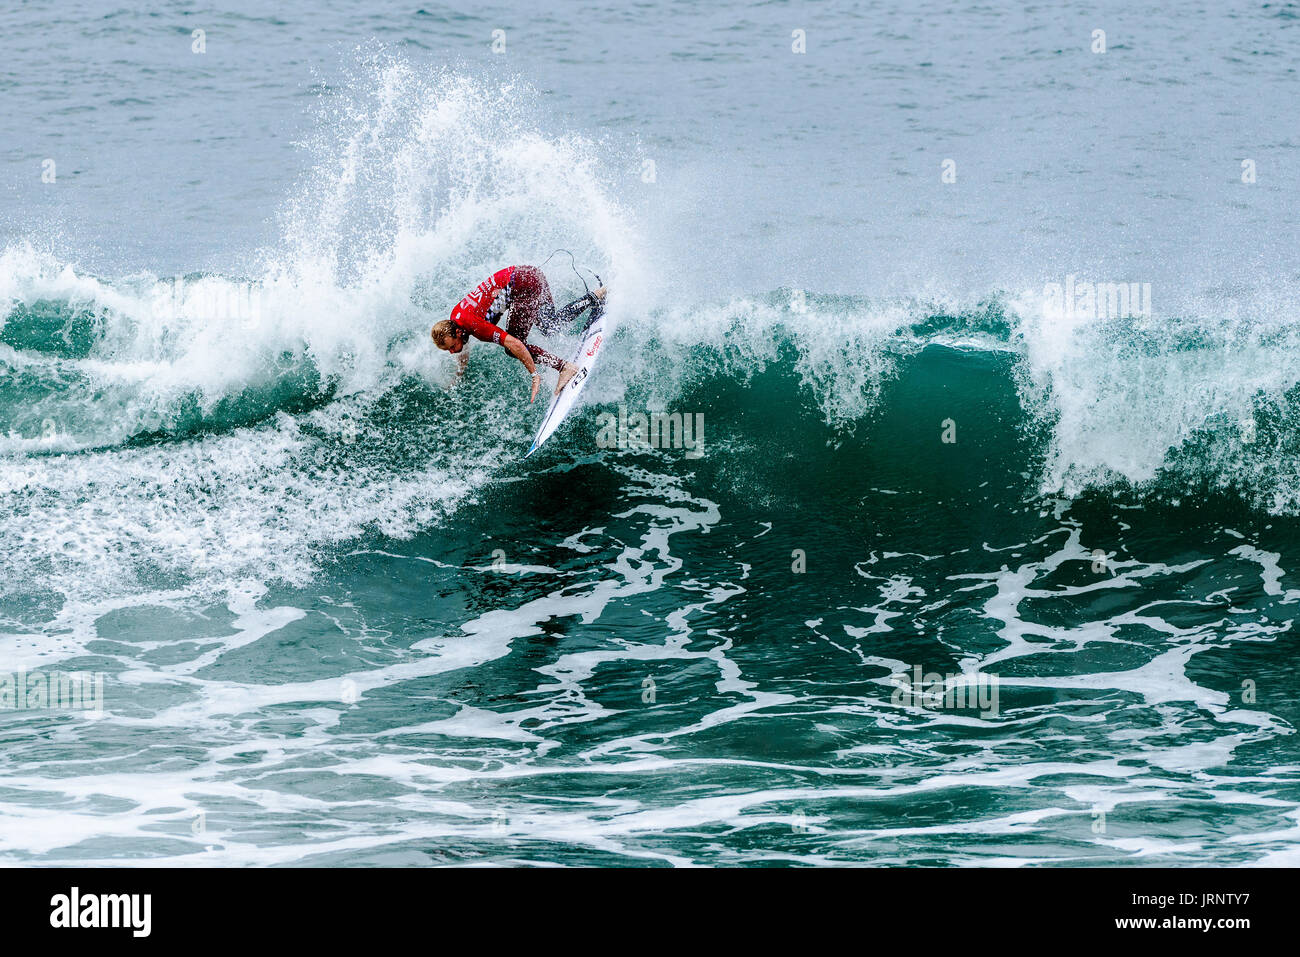 Huntington Beach, EE.UU. 05 agosto, 2017. Stu Kennedy (AUS) compite en la ronda 5 en el 2017 VANS US Open de surf. Crédito: Benjamin Ginsberg/Alamy Live News. Foto de stock